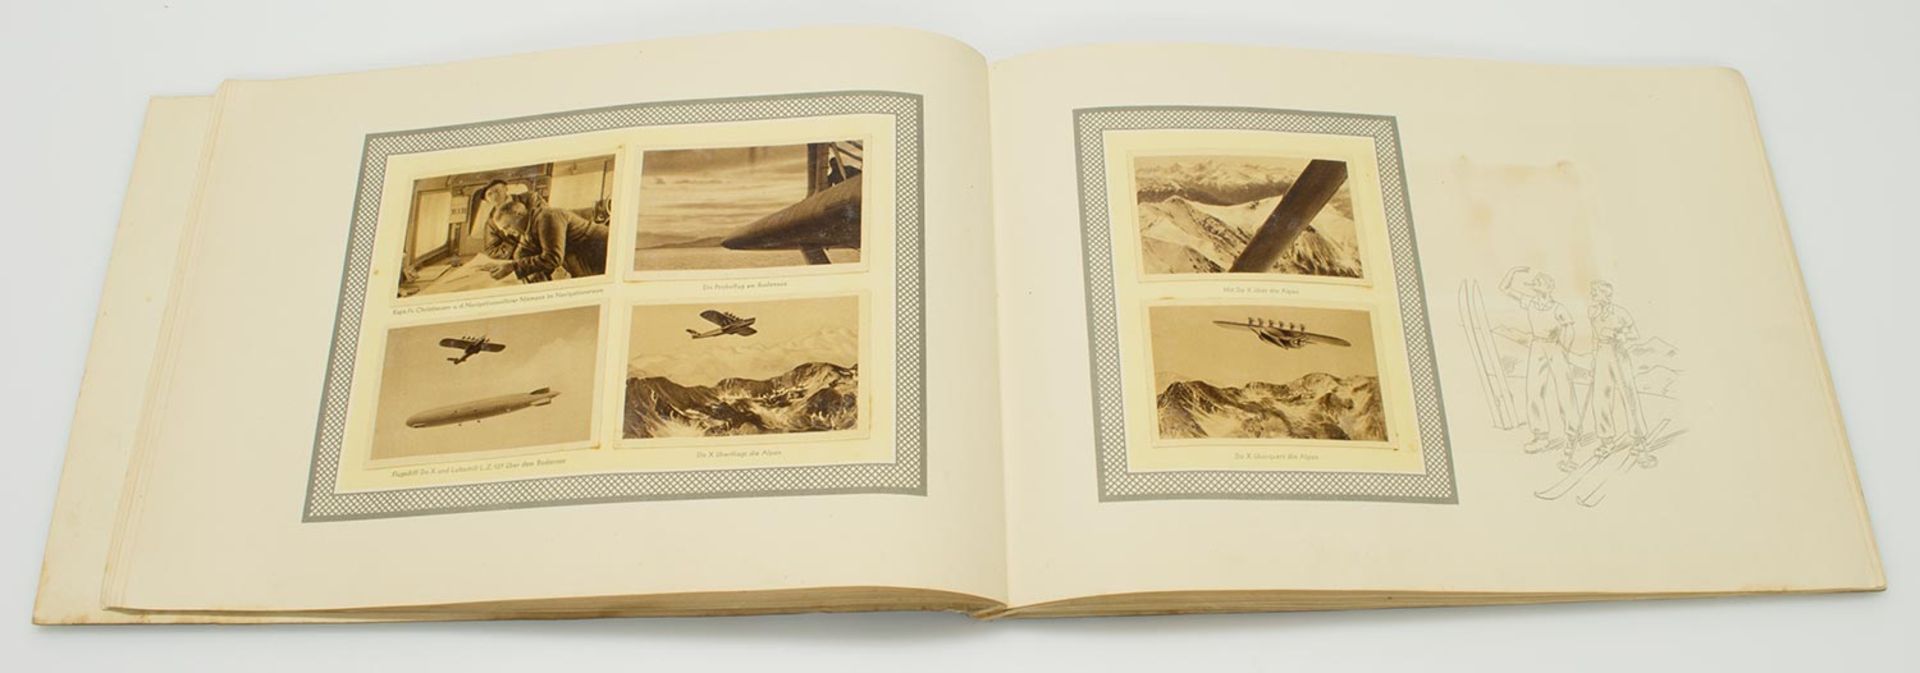 Sammelbilderalbum„DO-X - Weltreisebilder“, Haferflocken Peter Kölln/ Elmshorn, 1933, vollständig - Bild 2 aus 2